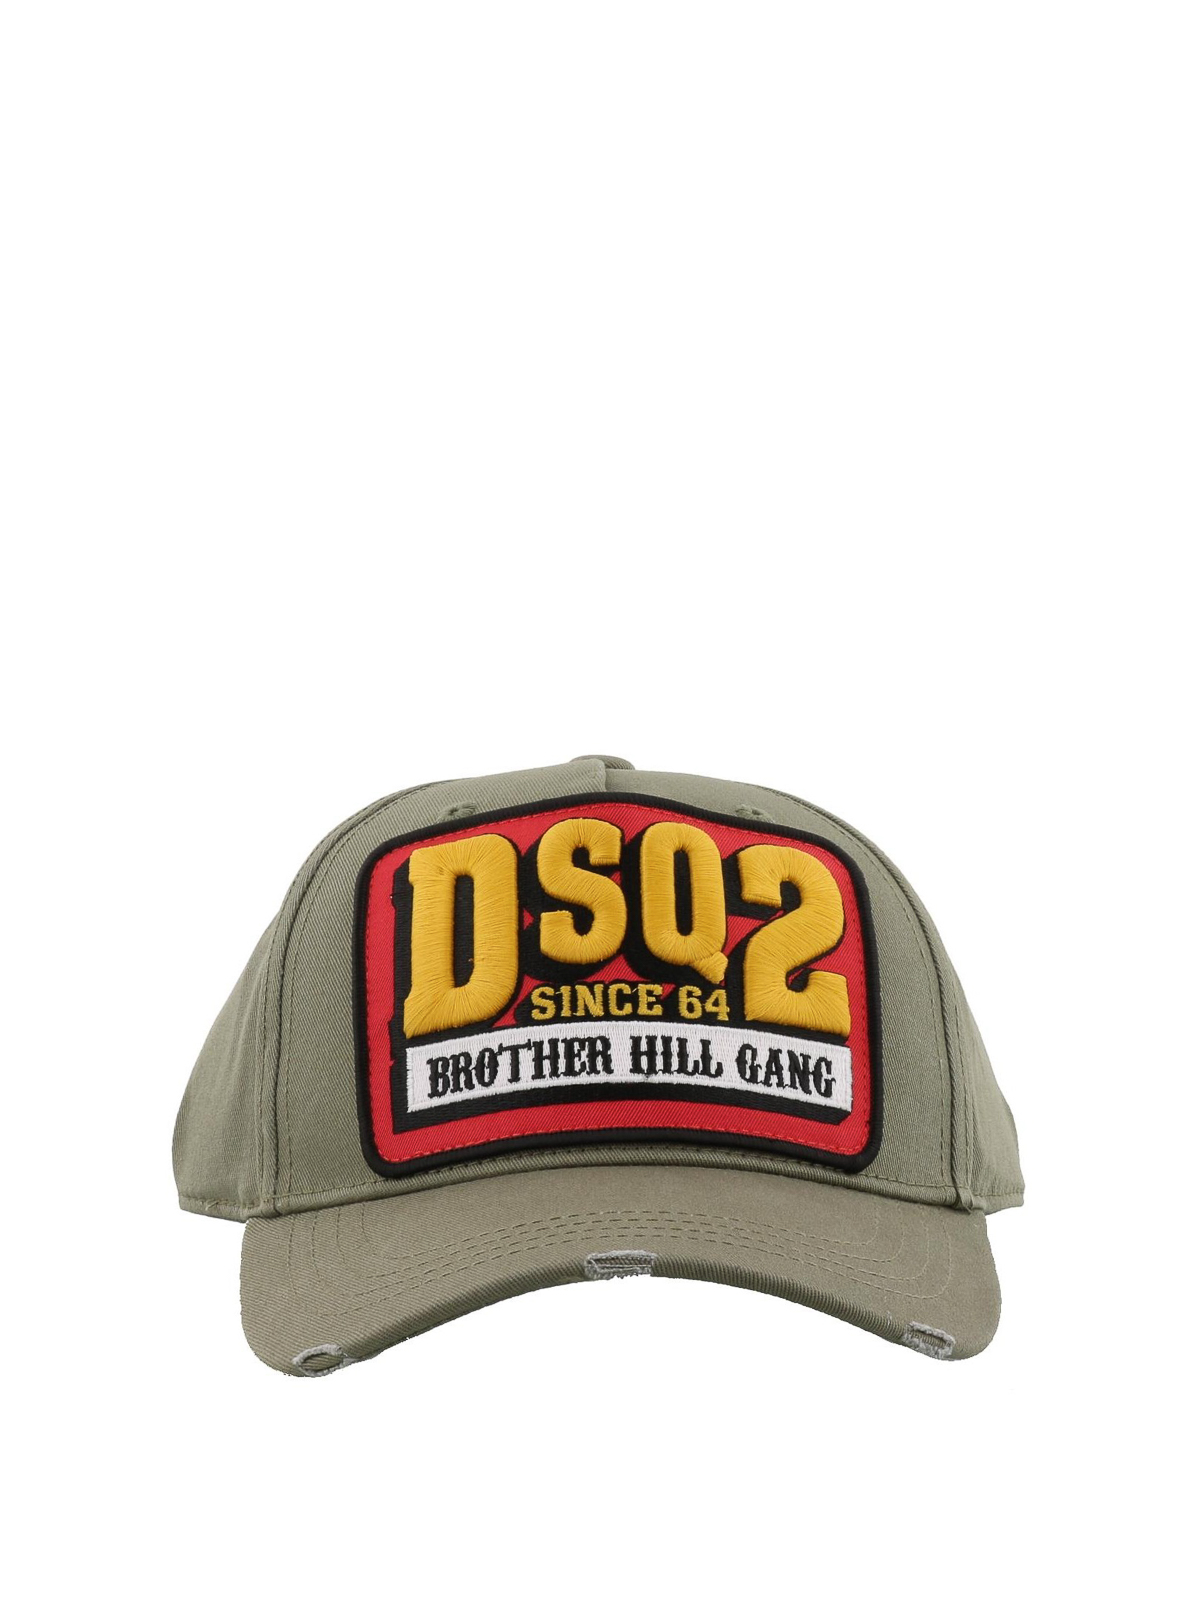 DSQ2 Brother Hill Gang baseball cap 